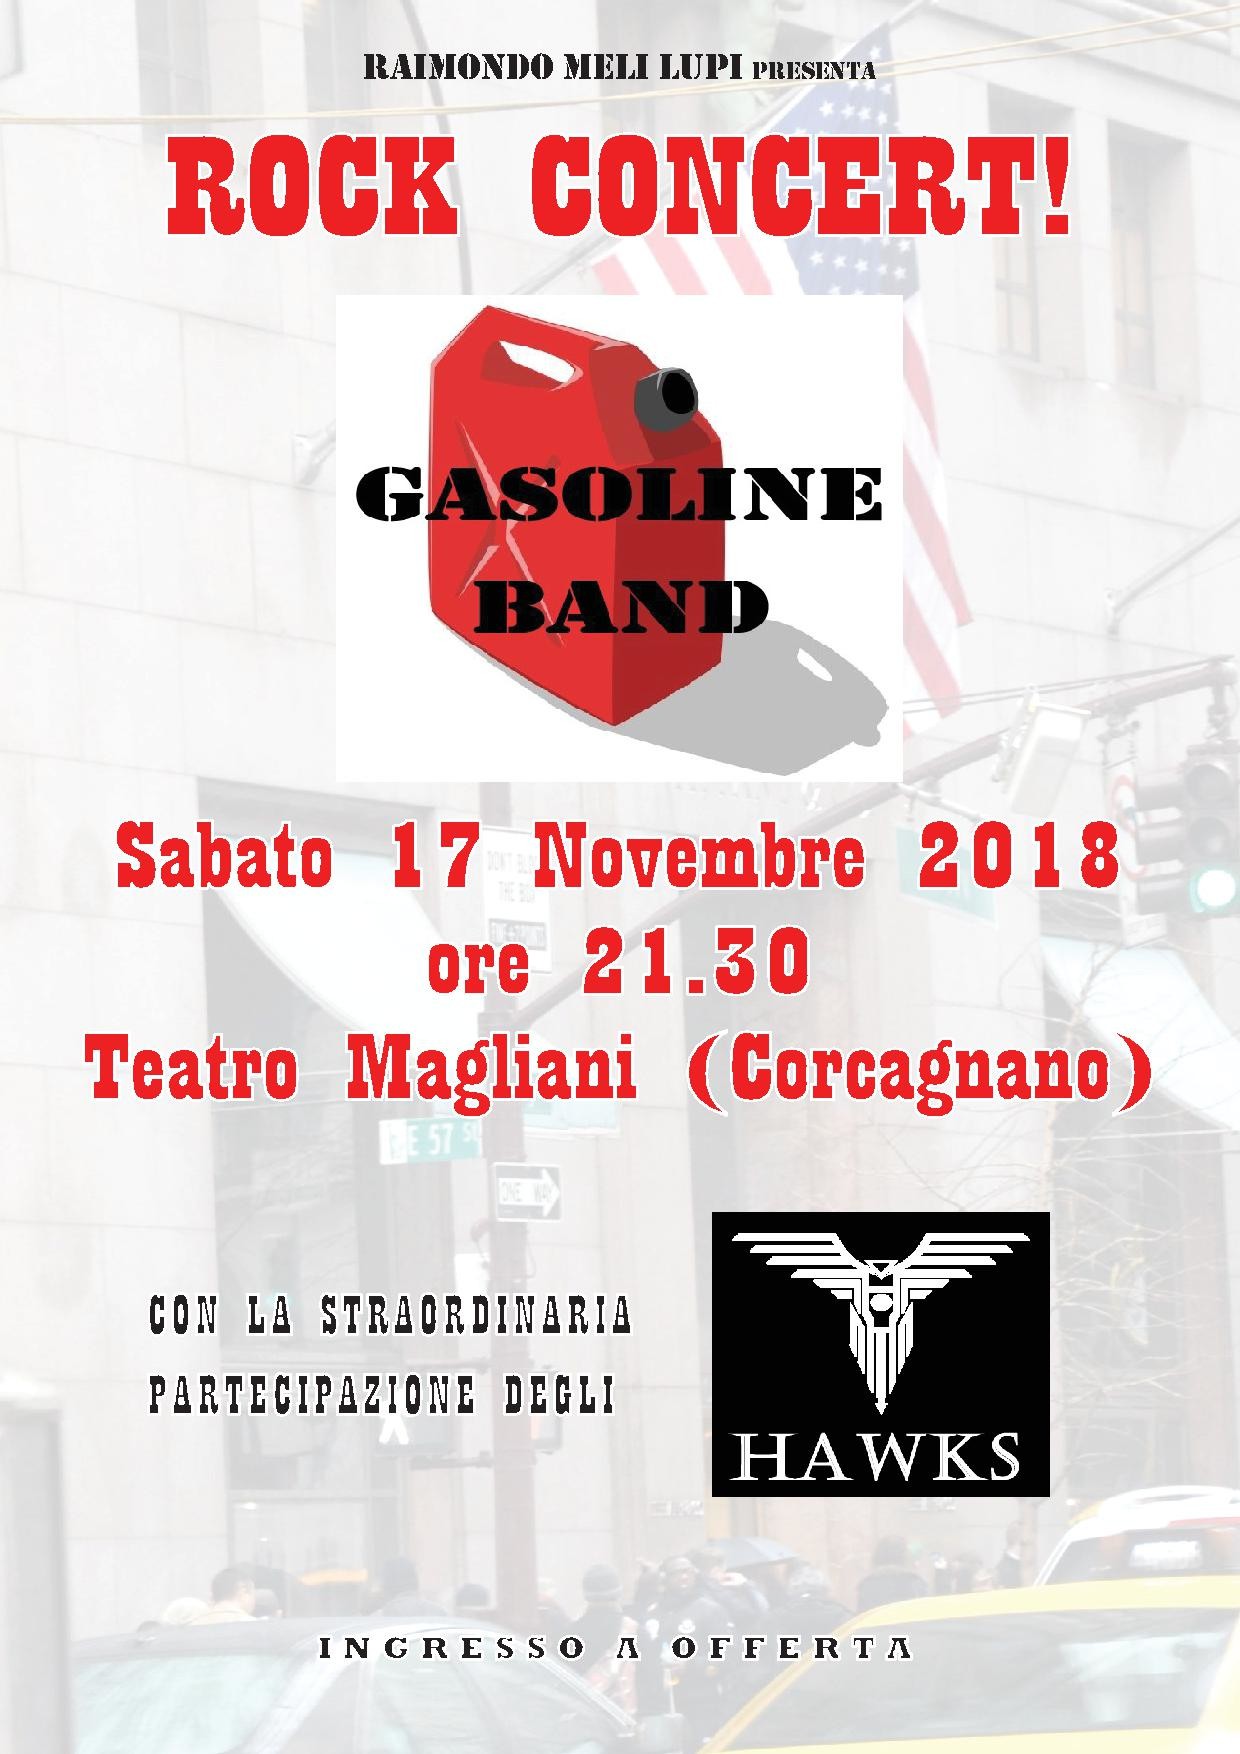 Rock concert con i "GASOLINE BAND" al teatro Ennio Magliani